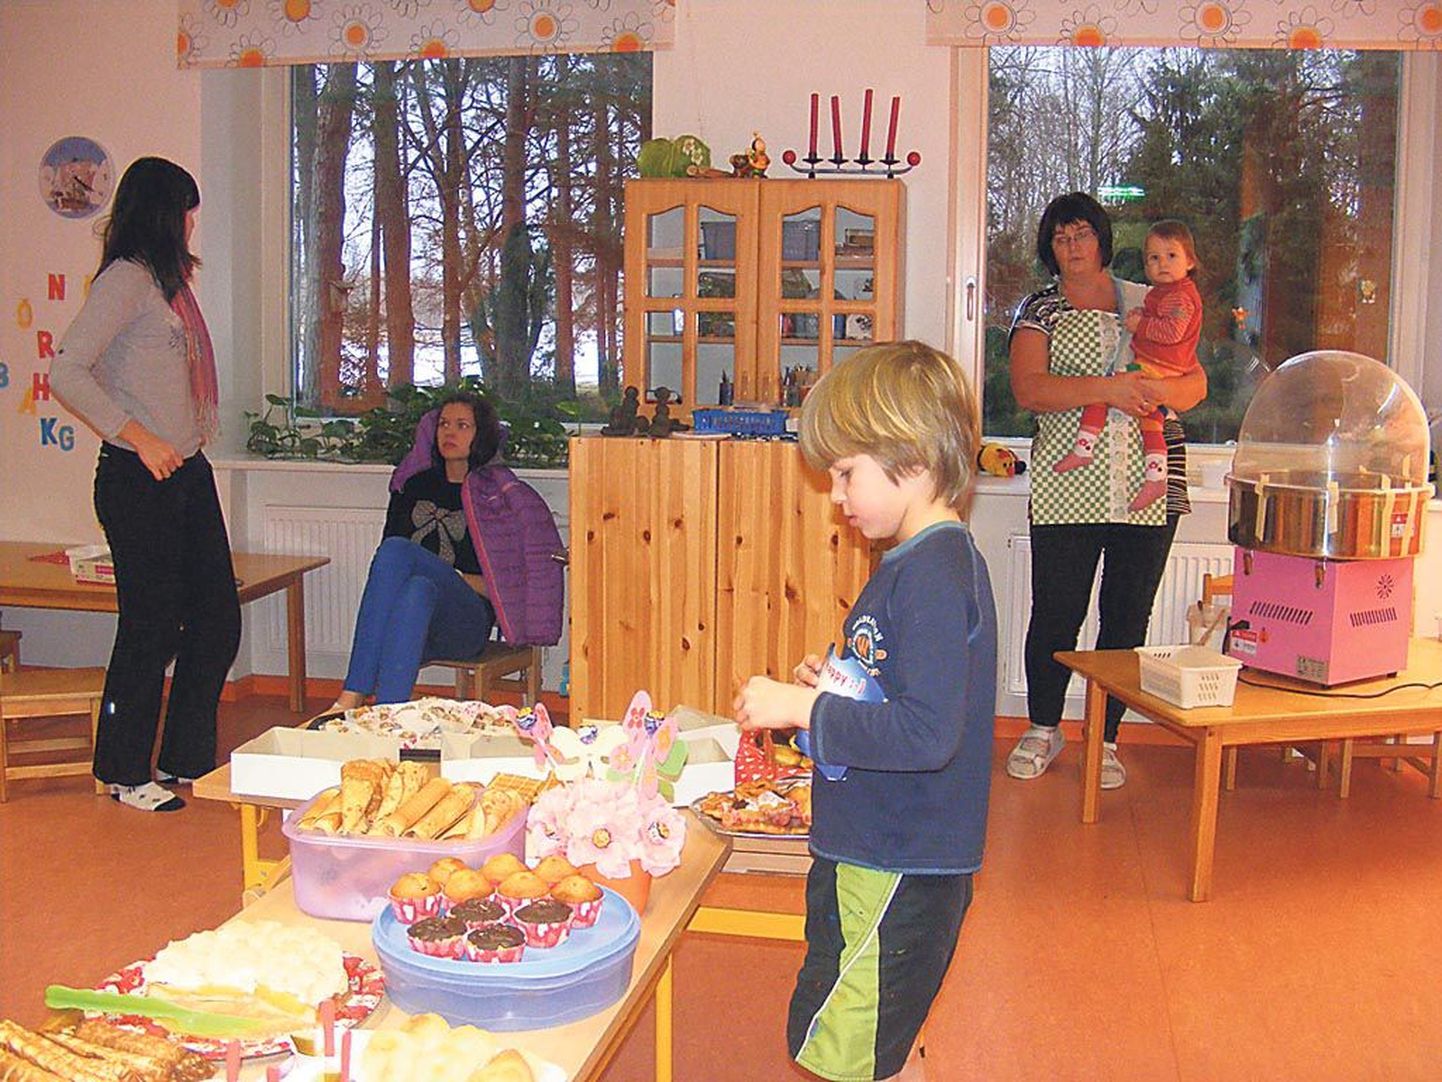 Audru lasteaias küpsetati ja müüdi kooke Pärnu lasteküla erivajadustega laste heaks.